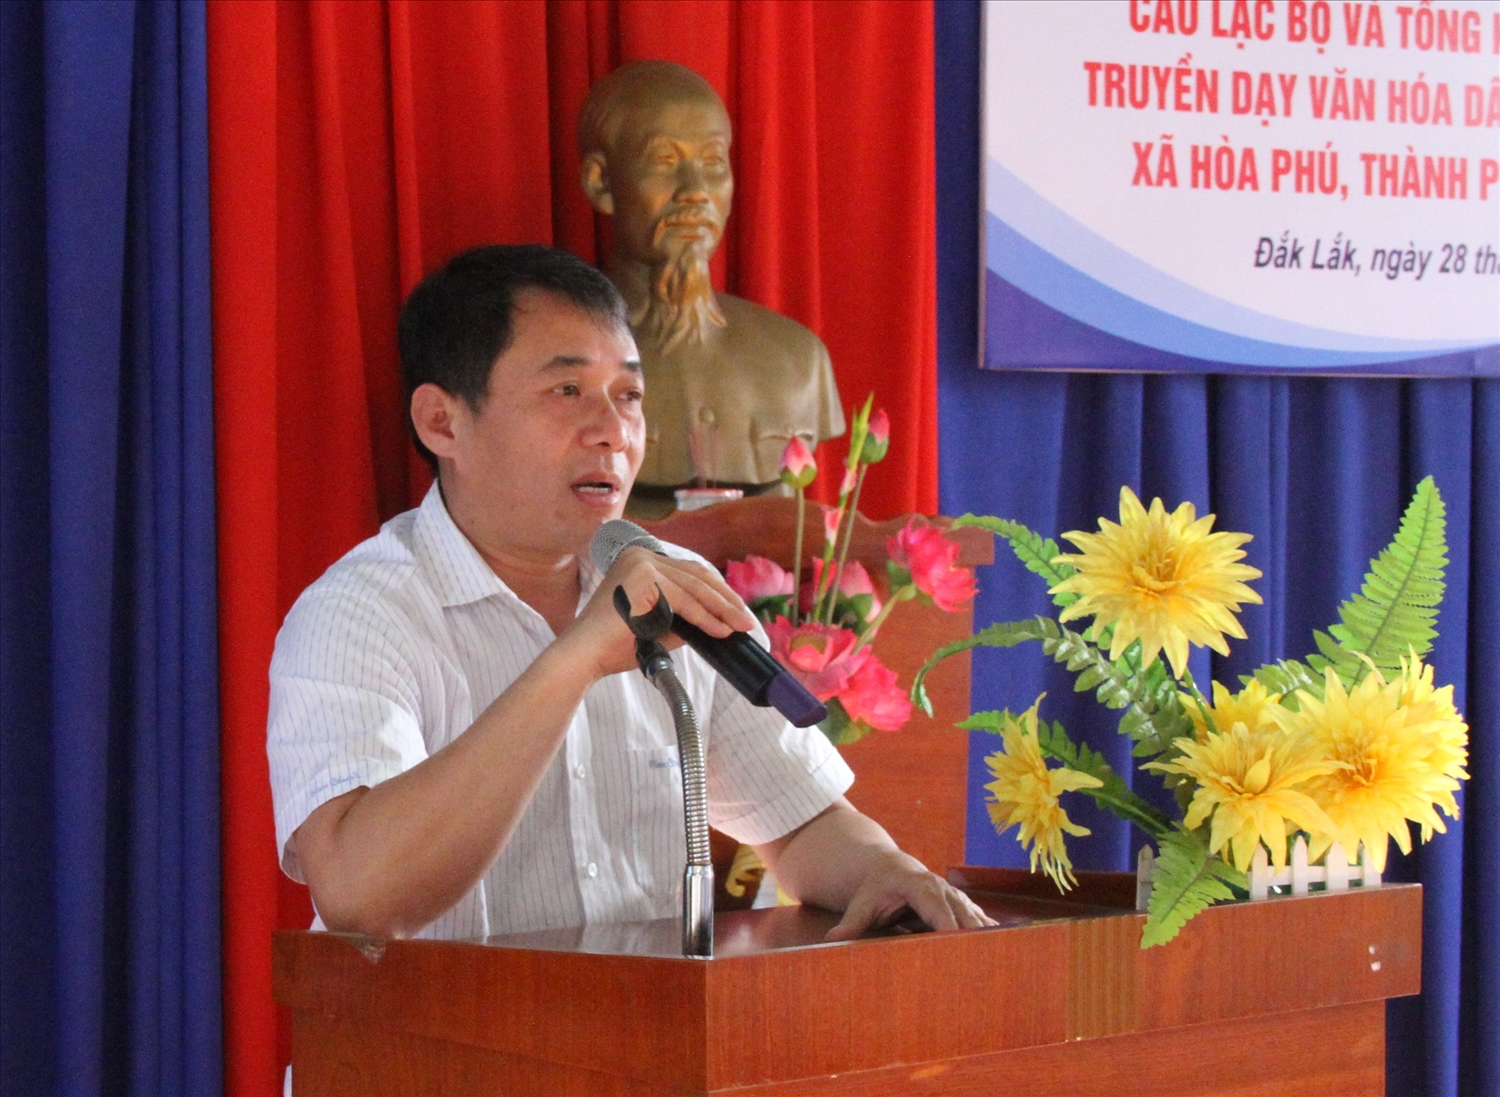 Phó giám đốc Sở Văn hóa, Thể thao và Du lịch tỉnh Đắk Lắk Lại Đức Đại phát biểu tại lễ ra mắt